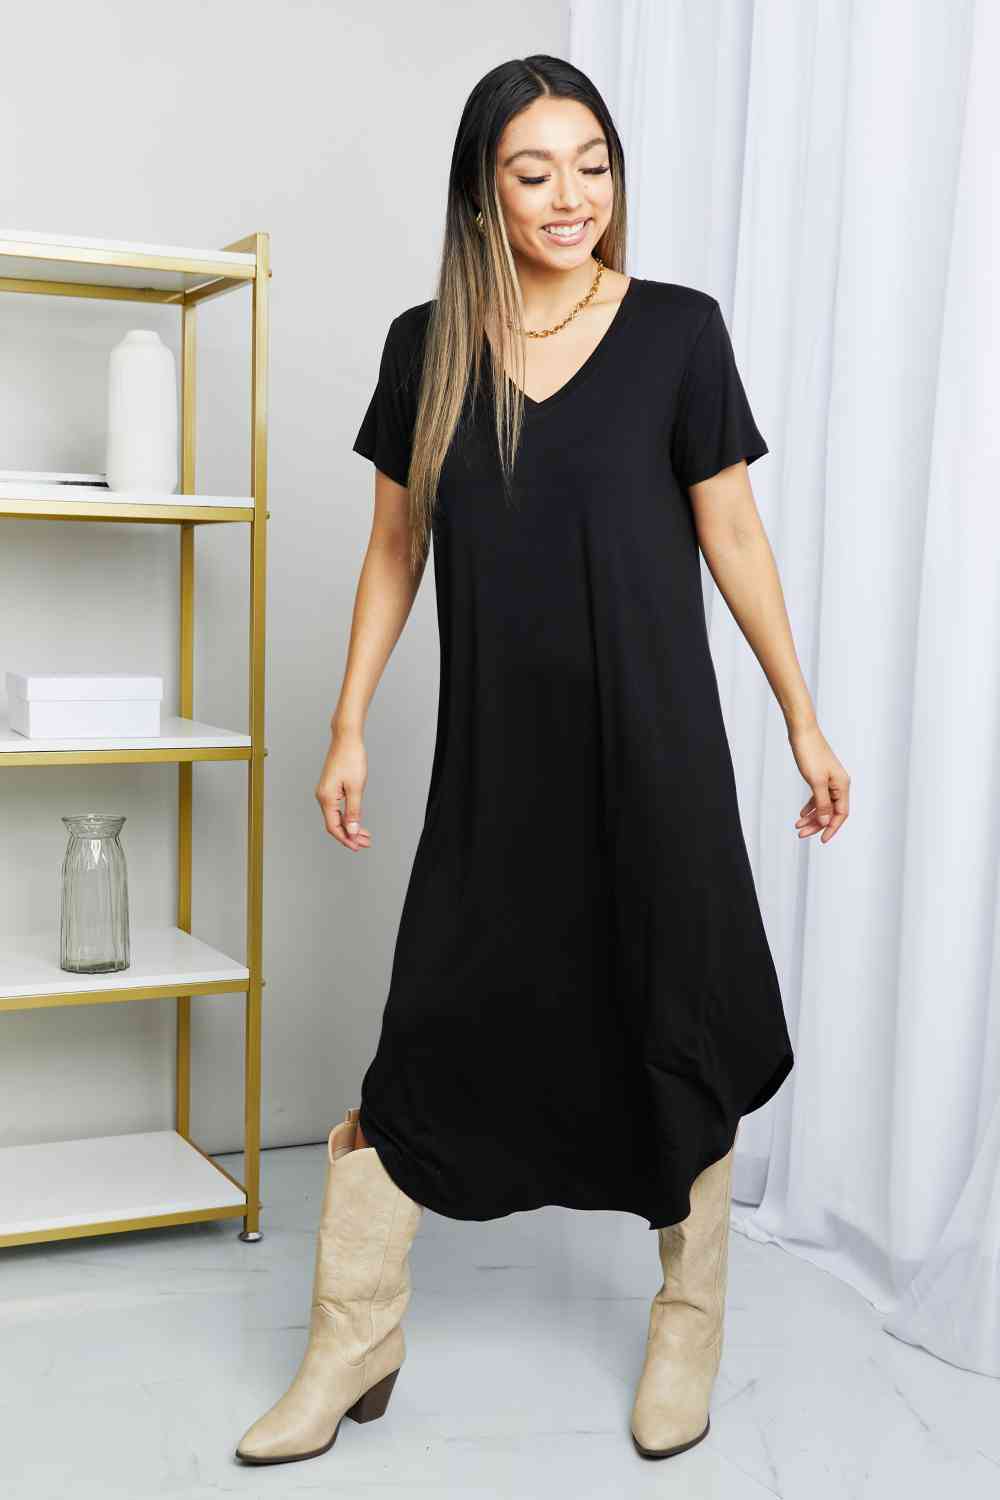 HYFVE V-Neck Short Sleeve Curved Hem Dress in Black  Krazy Heart Designs Boutique Black S 